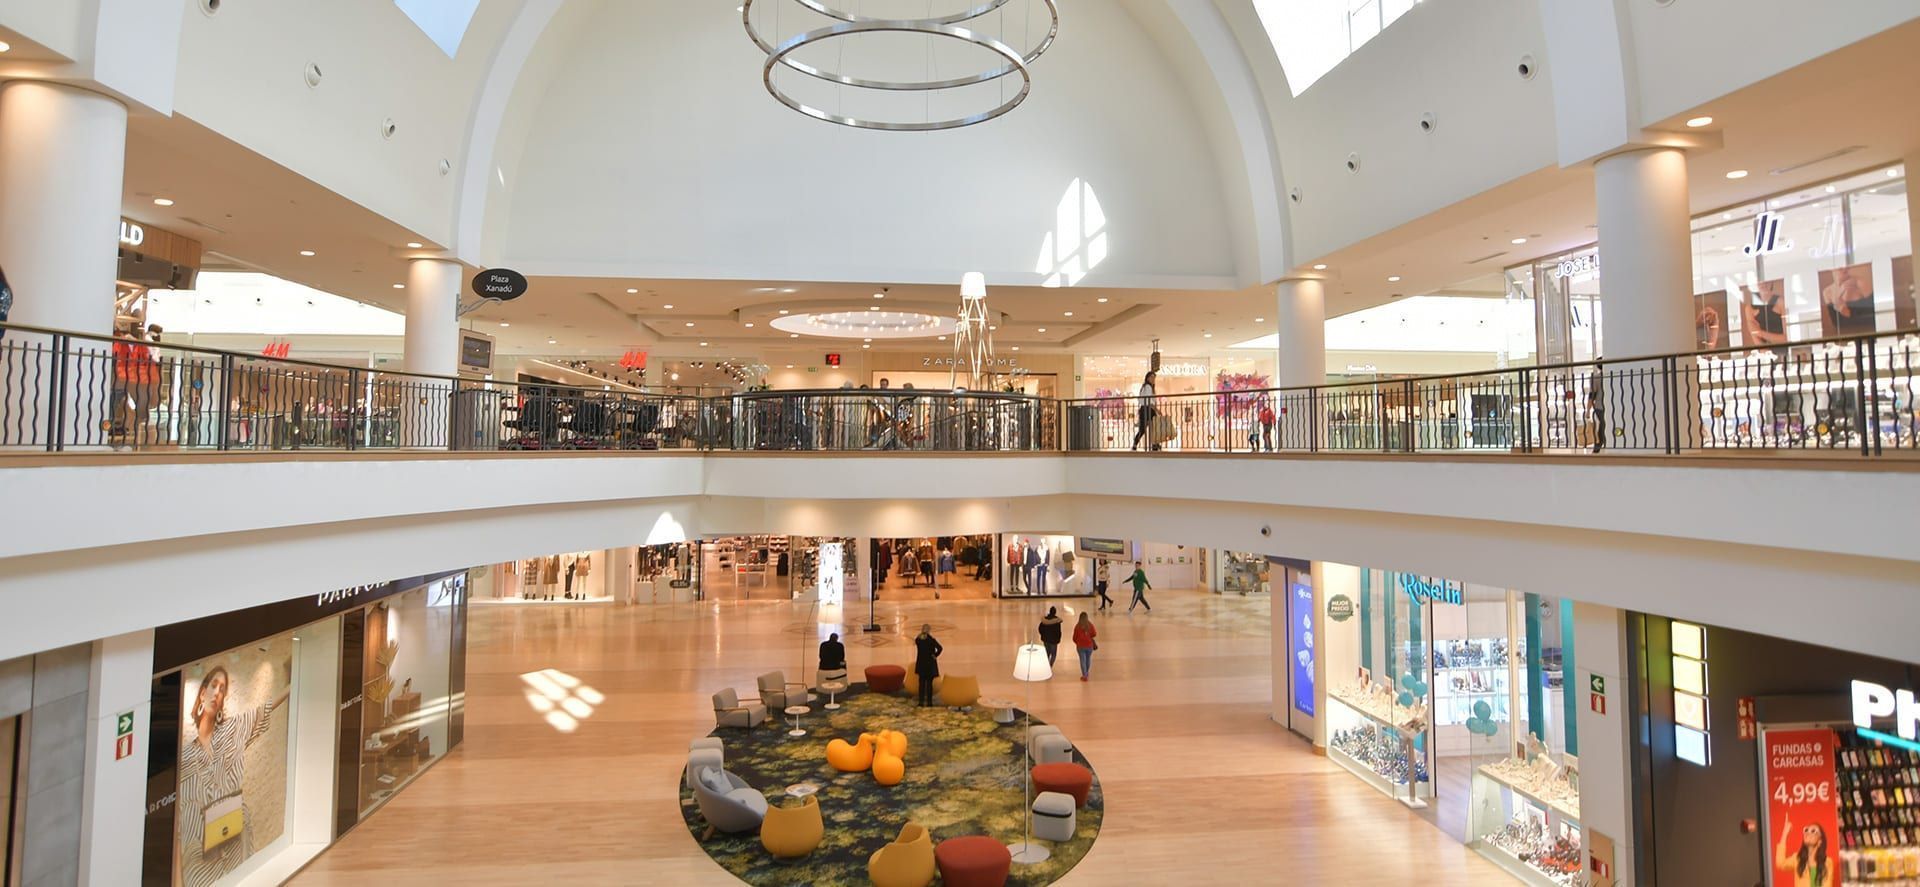 El centro comercial Xanadú' inaugura seis nuevos establecimientos - Vivir Ediciones